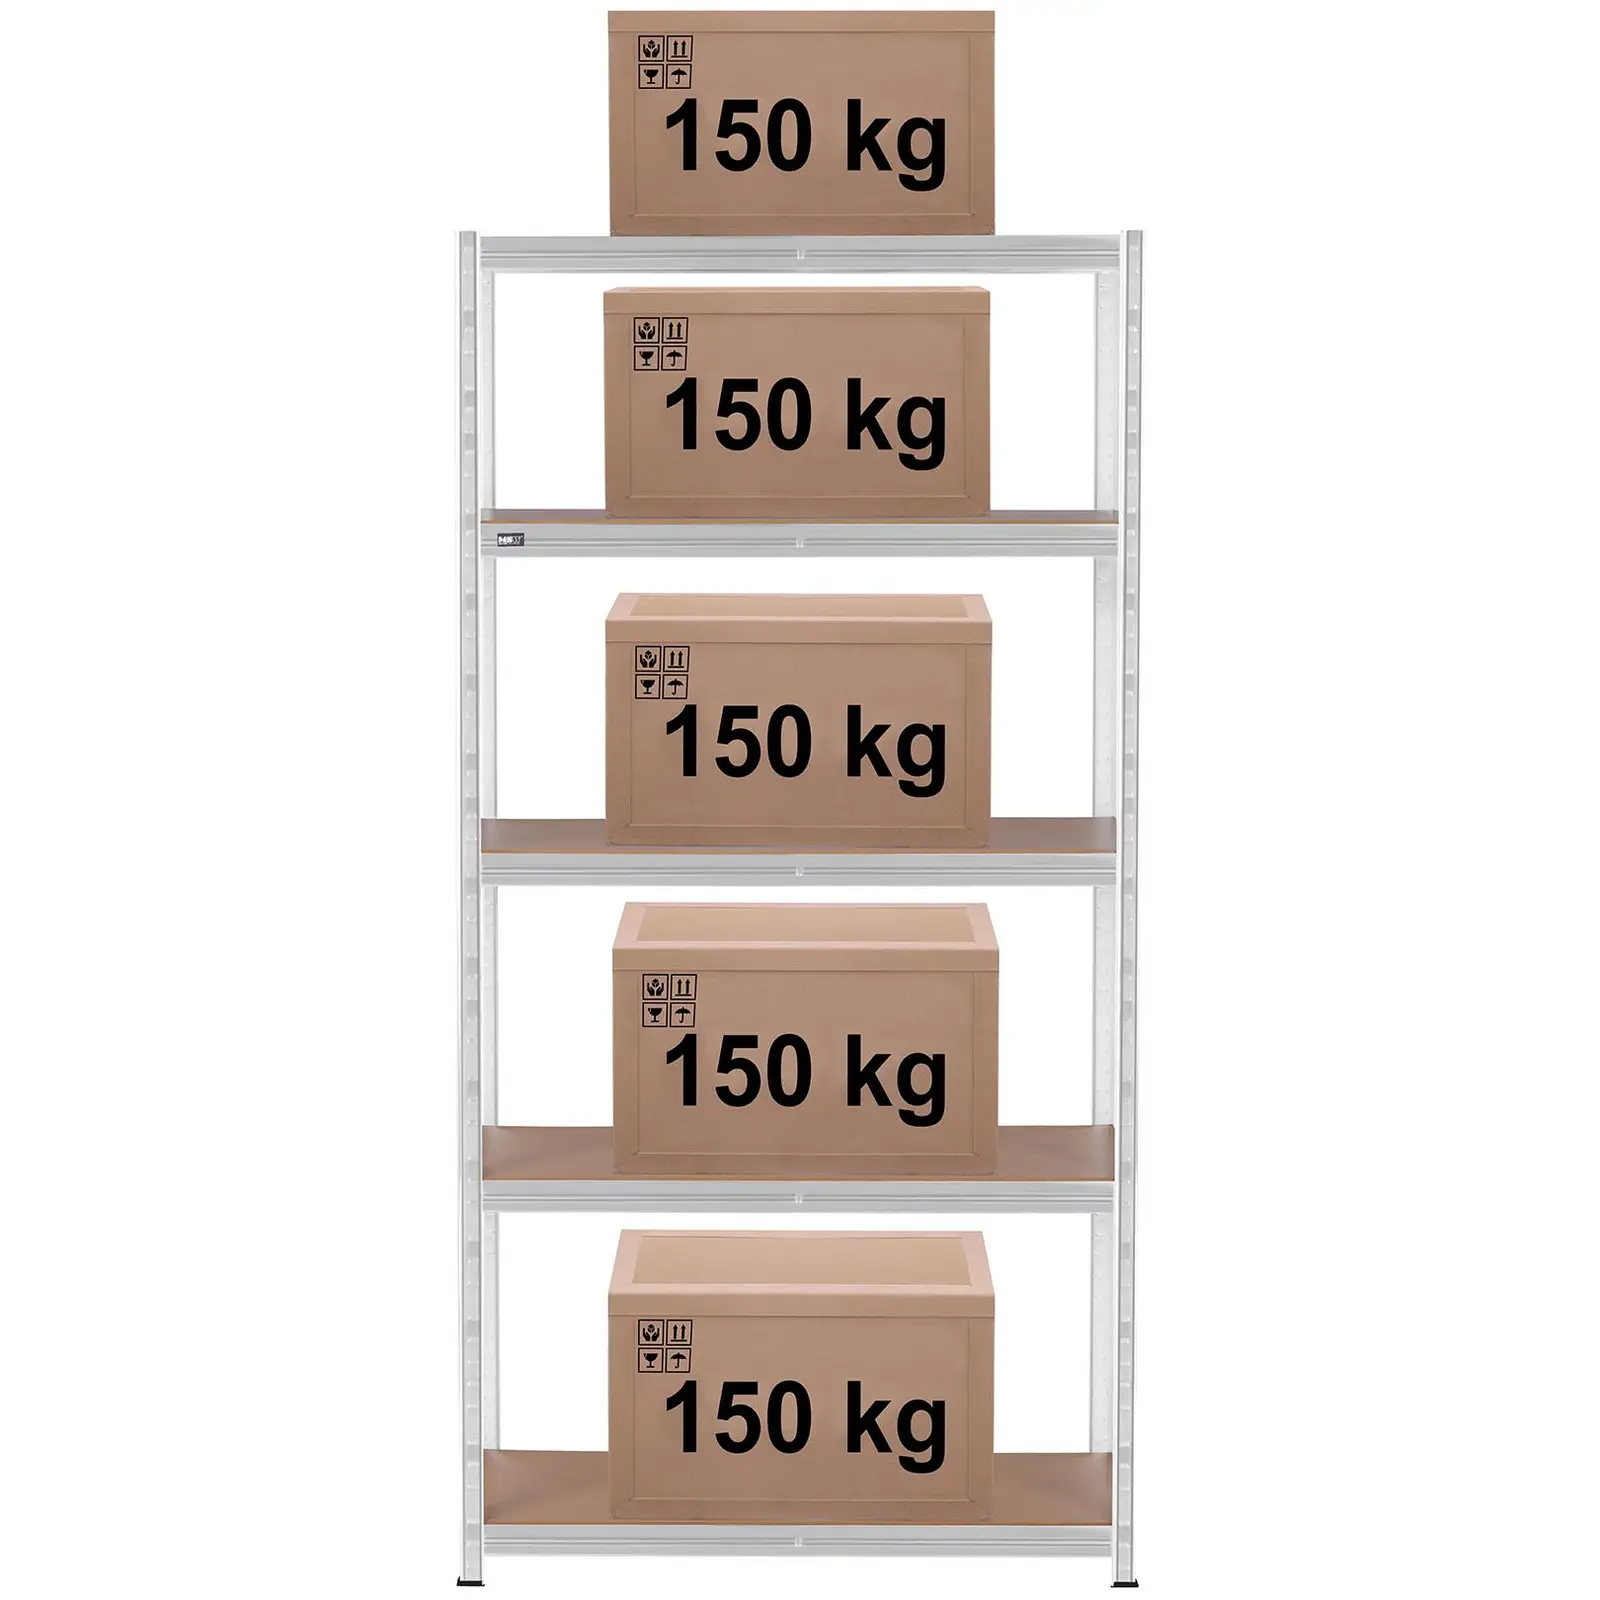 Schwerlastregal - 100 x 50 x 197 cm - für 5 x 150 kg - Grau